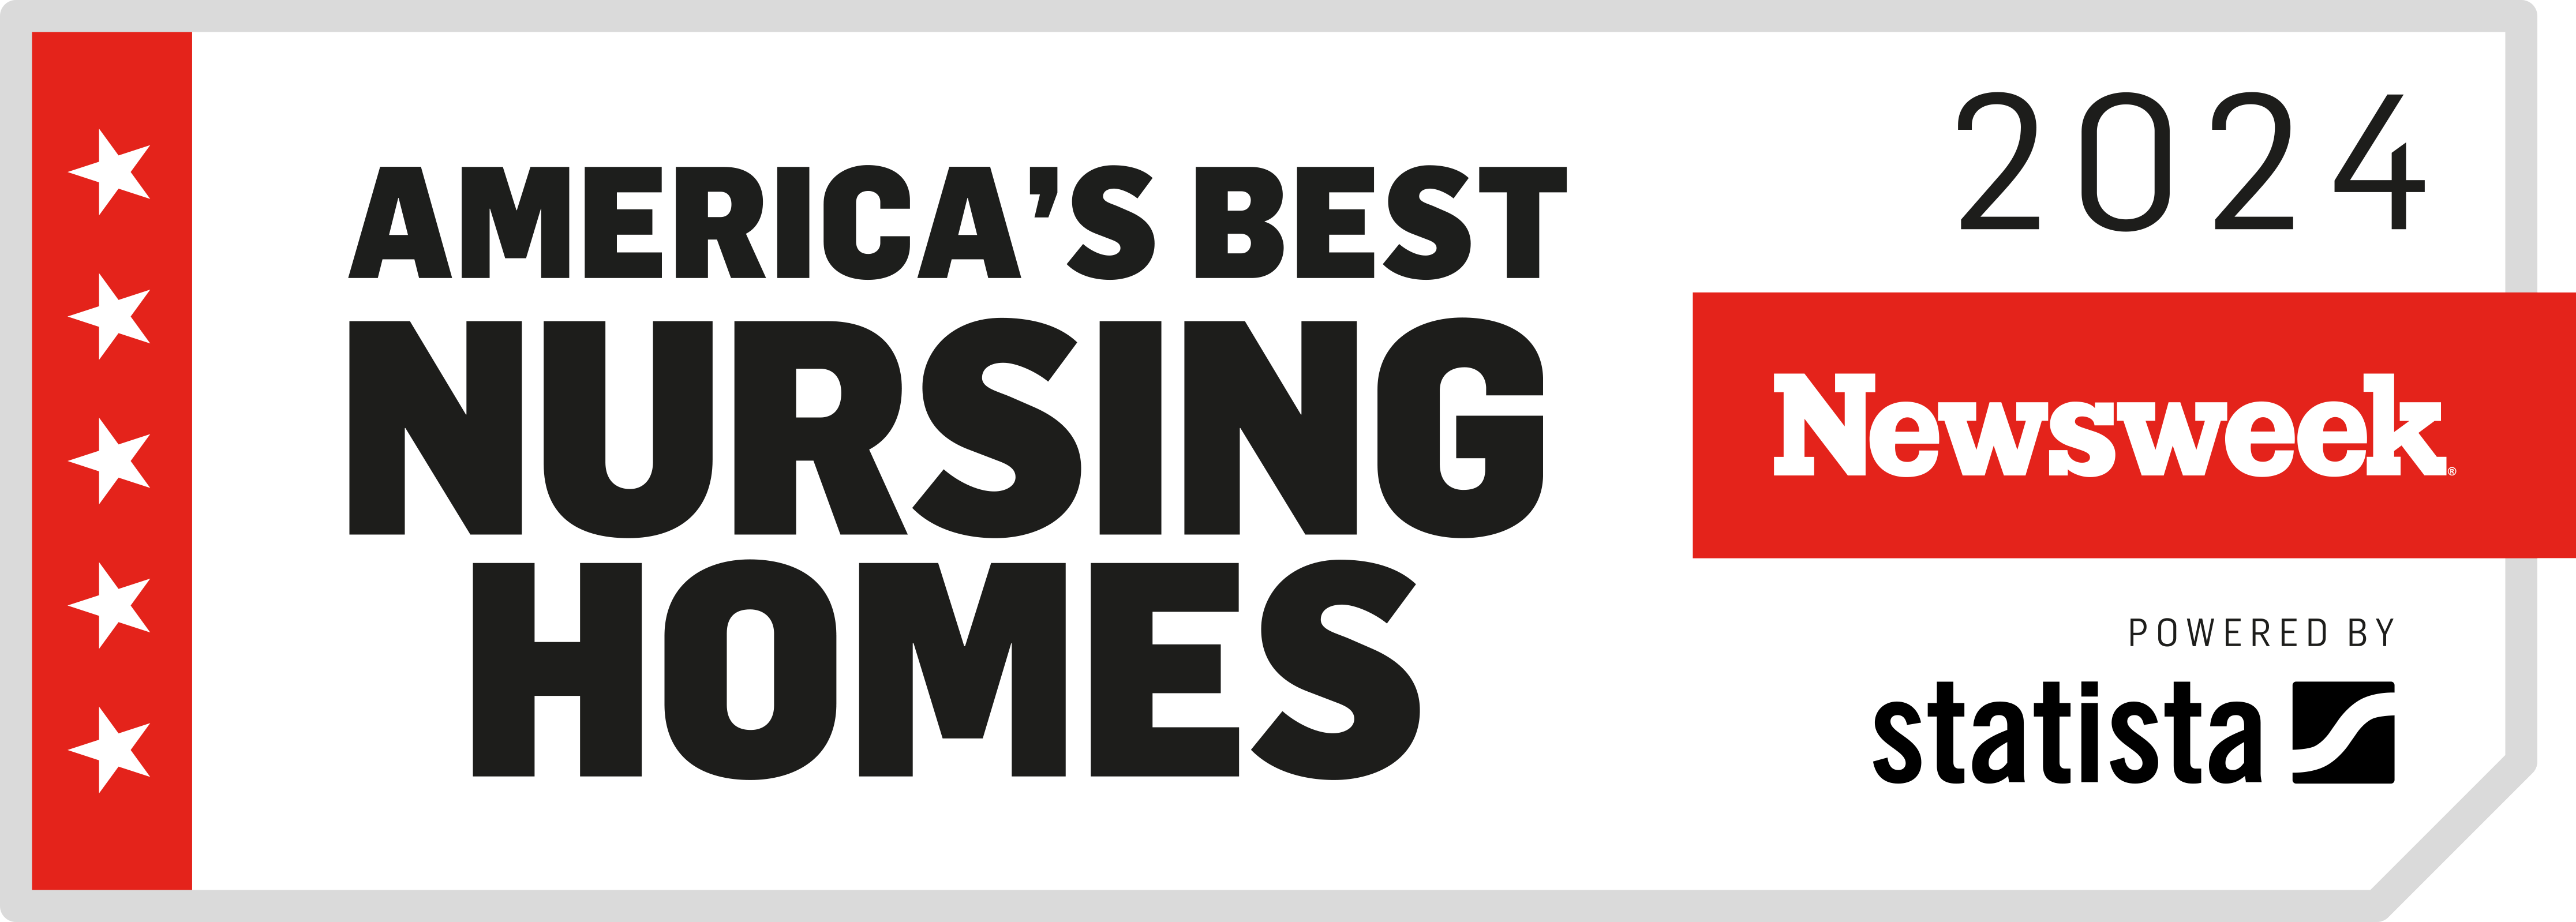 Newsweek Award for America's Best Nursing Homes 2024